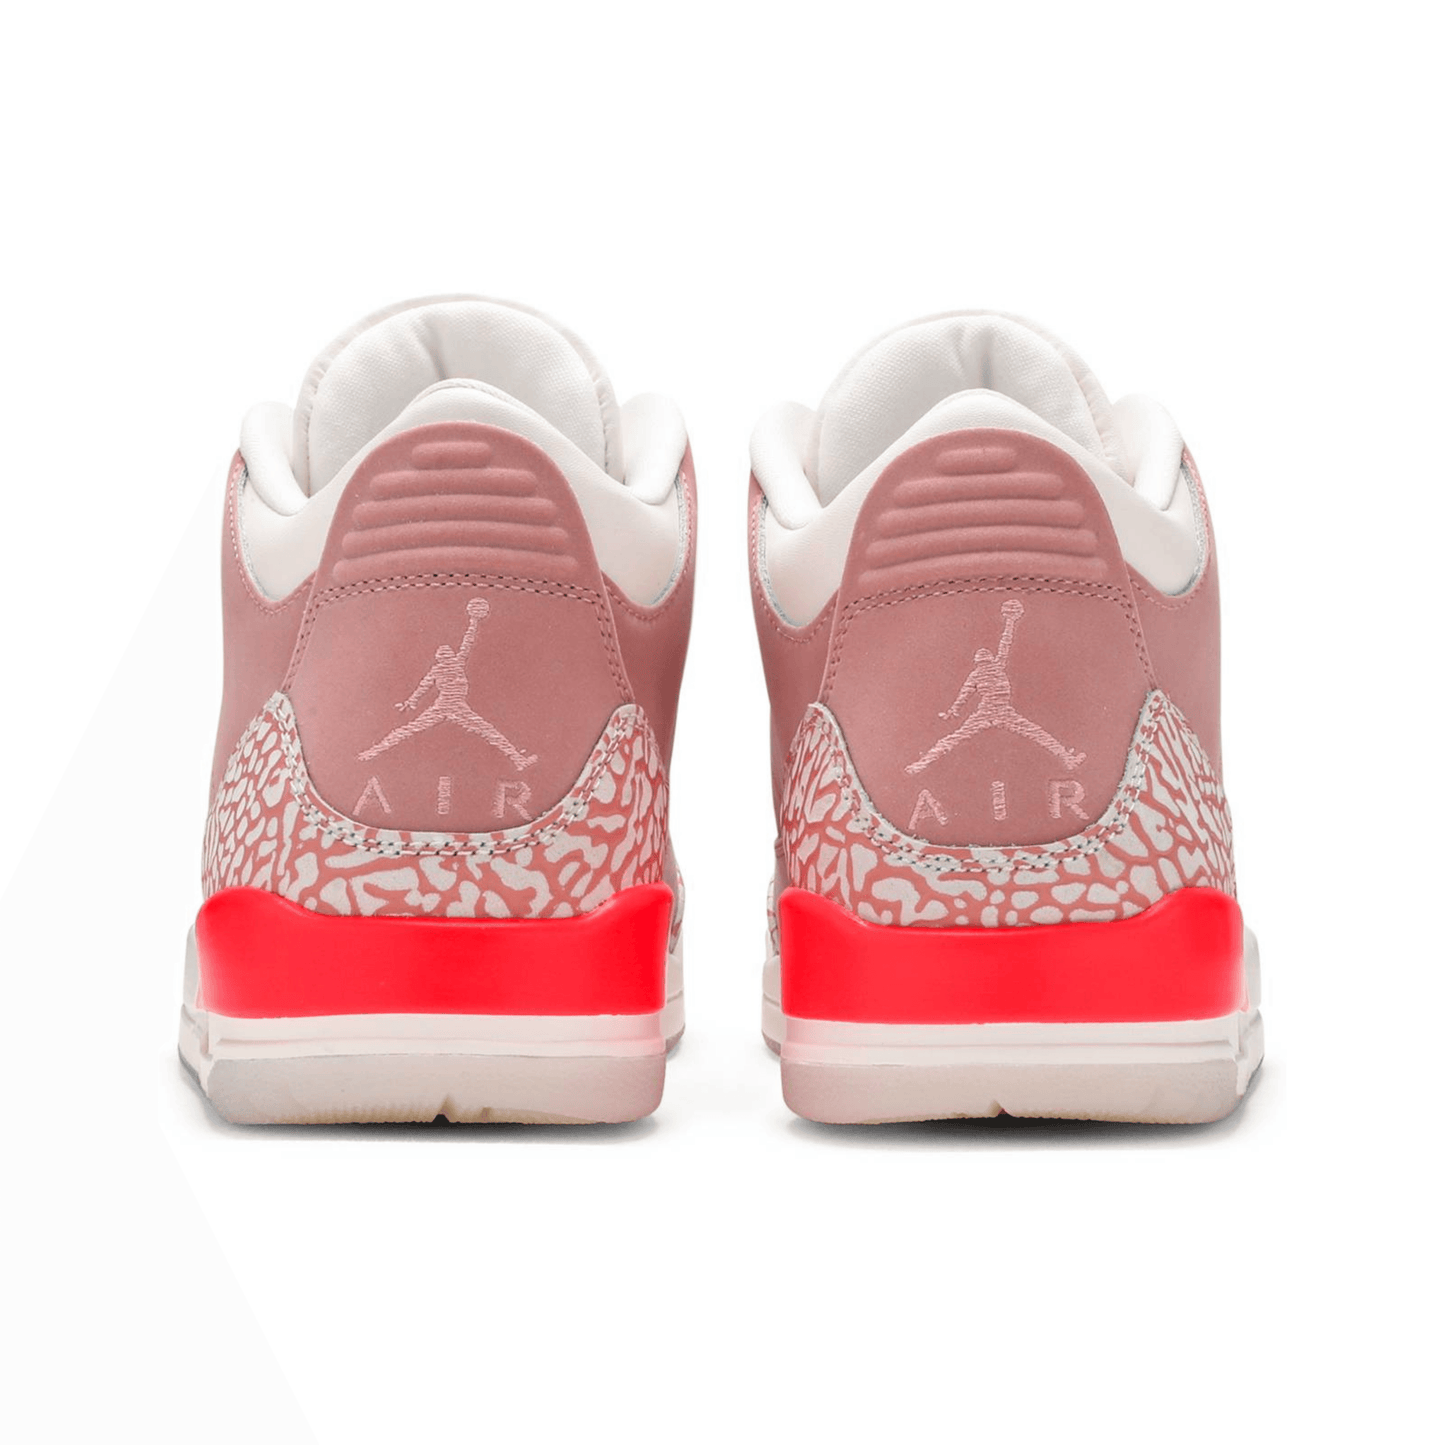 Air Jordan 3 Retro ‘Rust Pink’ WMNS - FRESNEAKERS